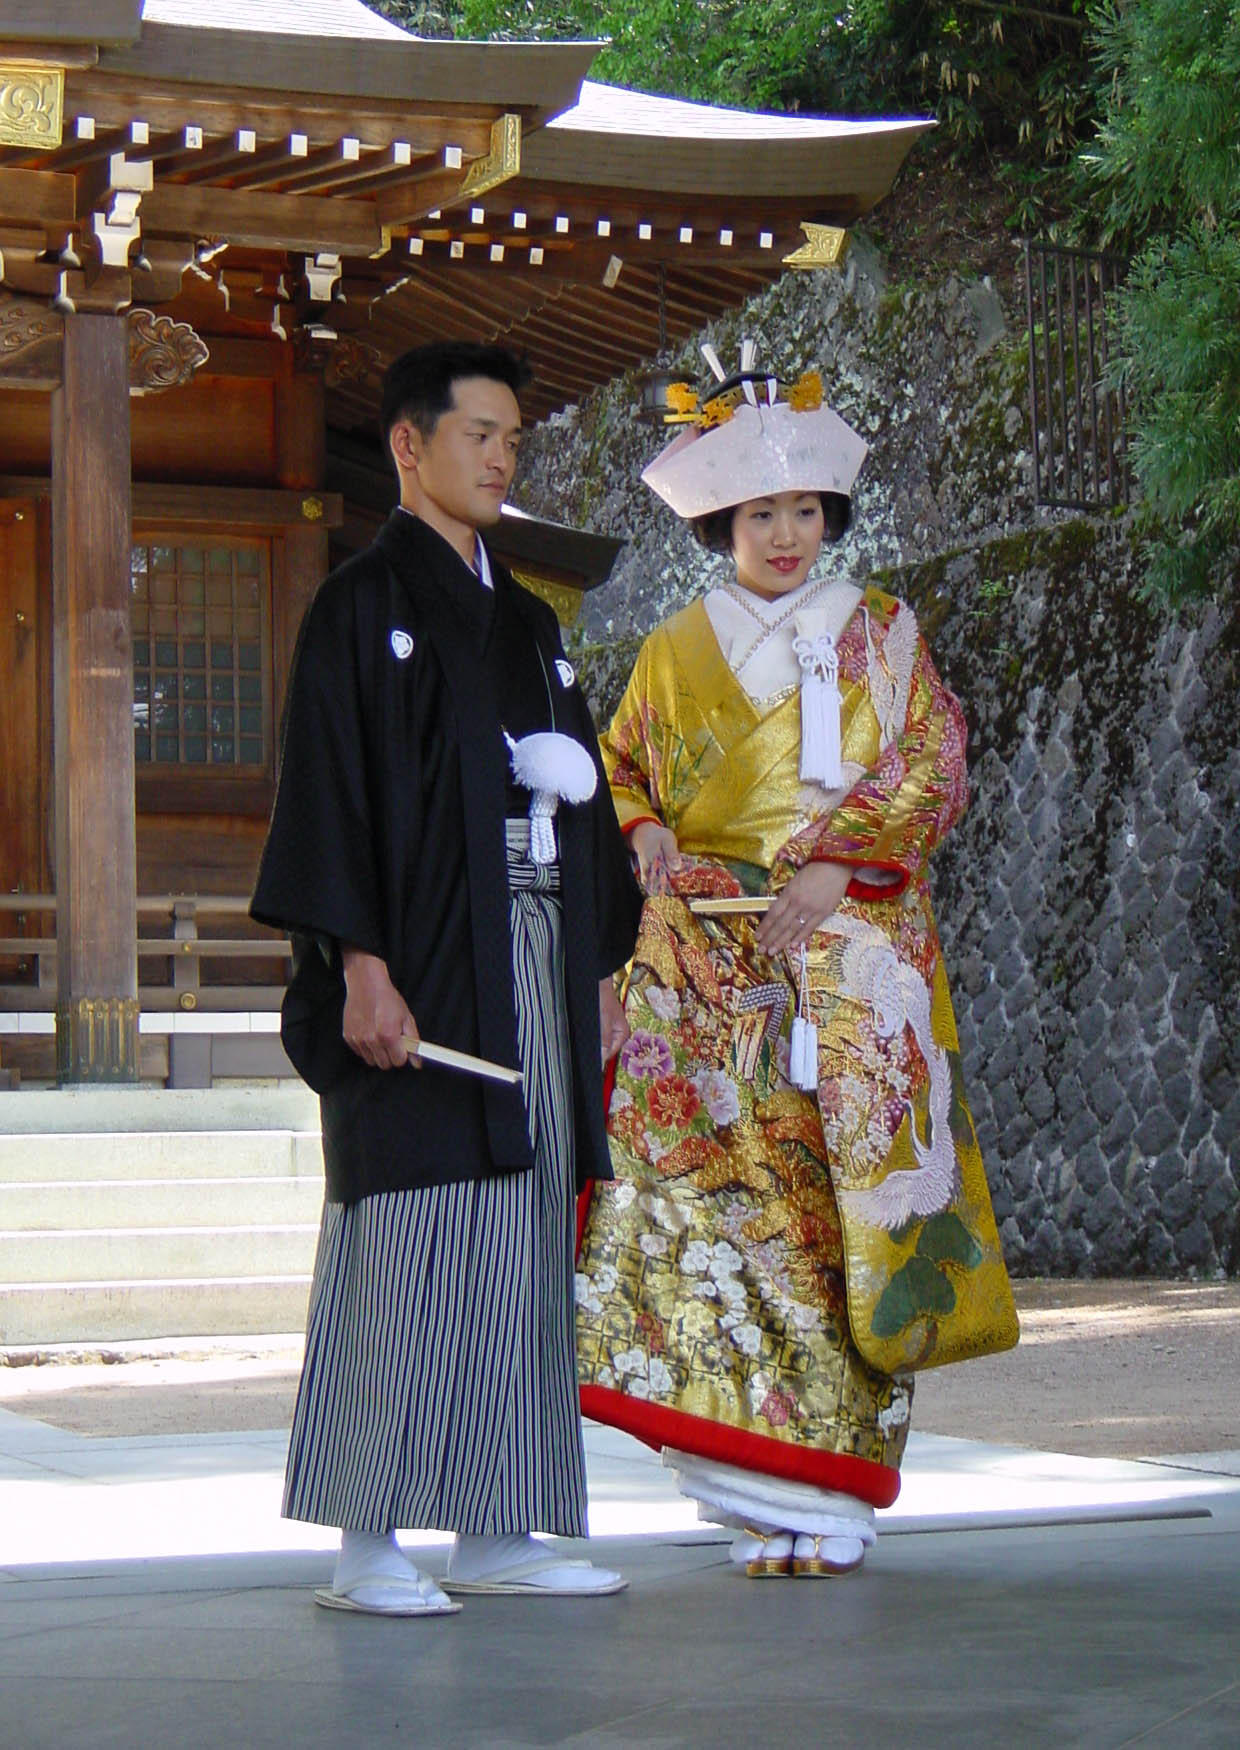 Foto huwelijk in Japan (Shinto ceremonie)